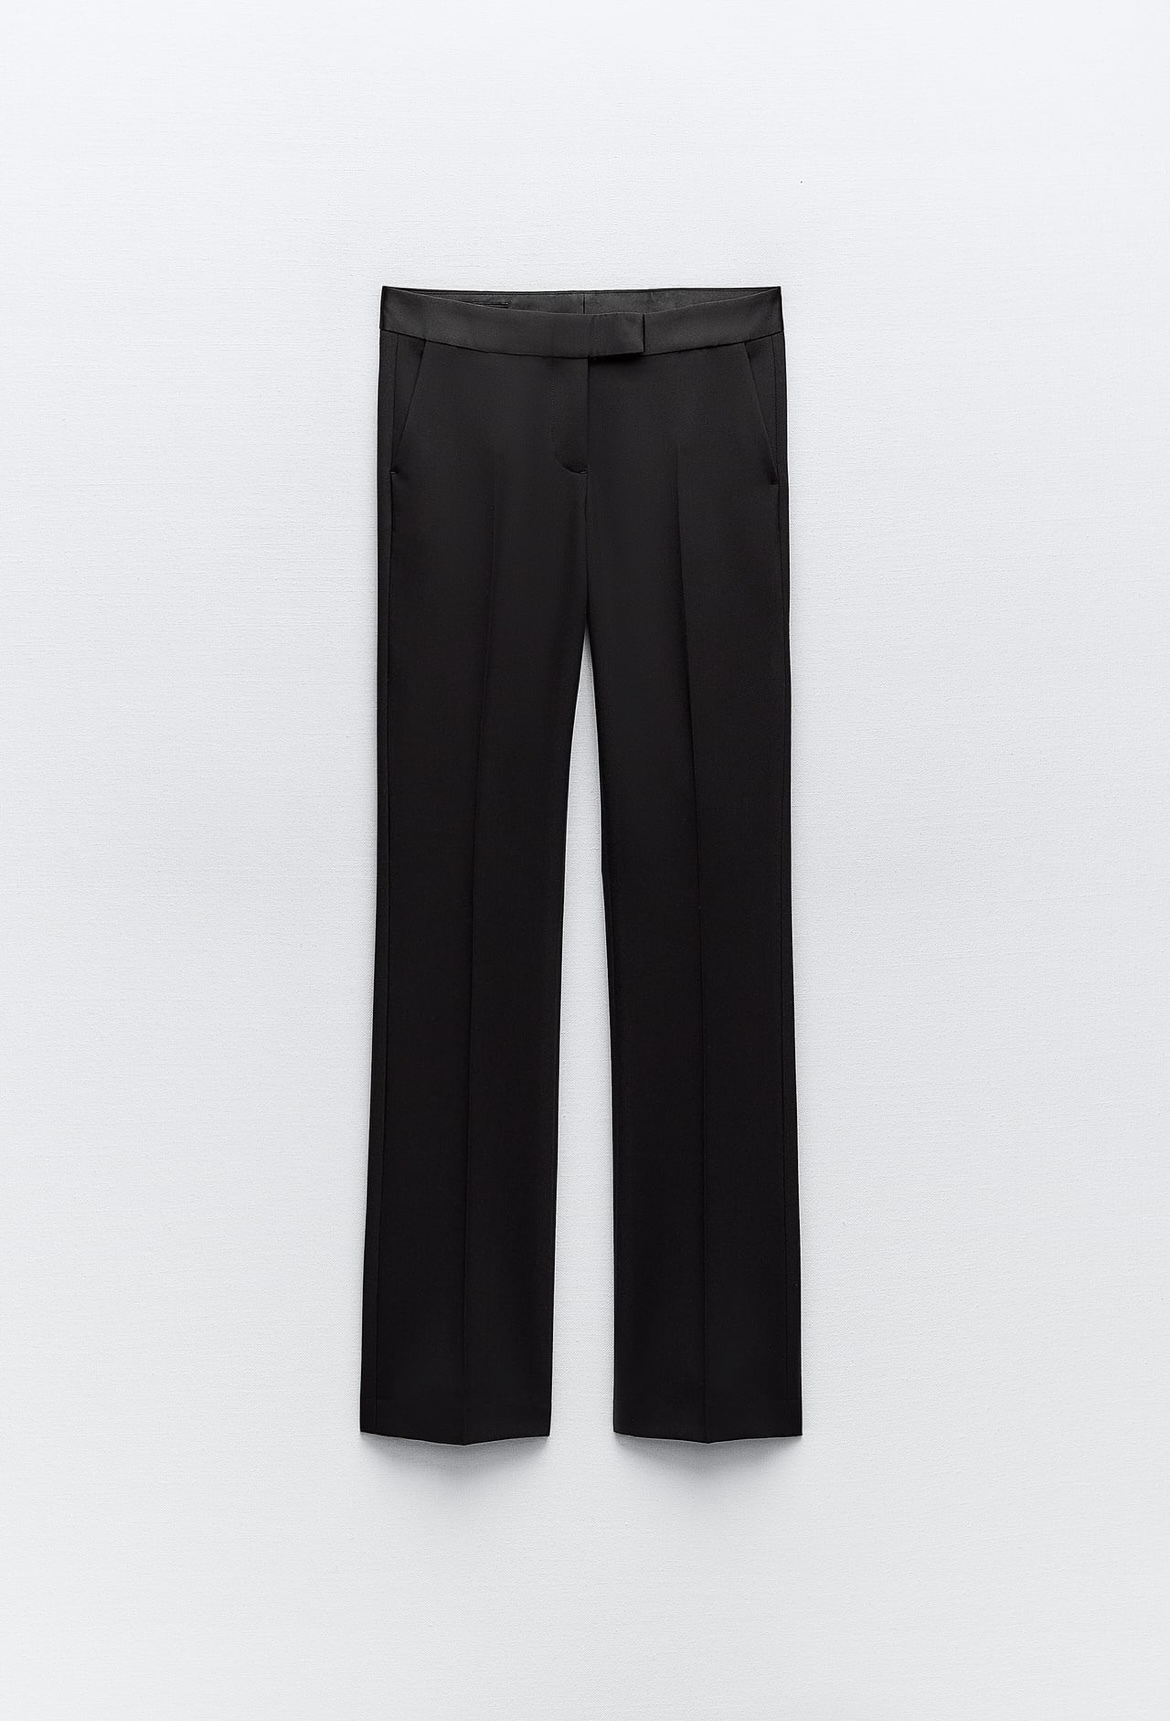 Pantalón cintura combinada de Zara (35,95 euros)